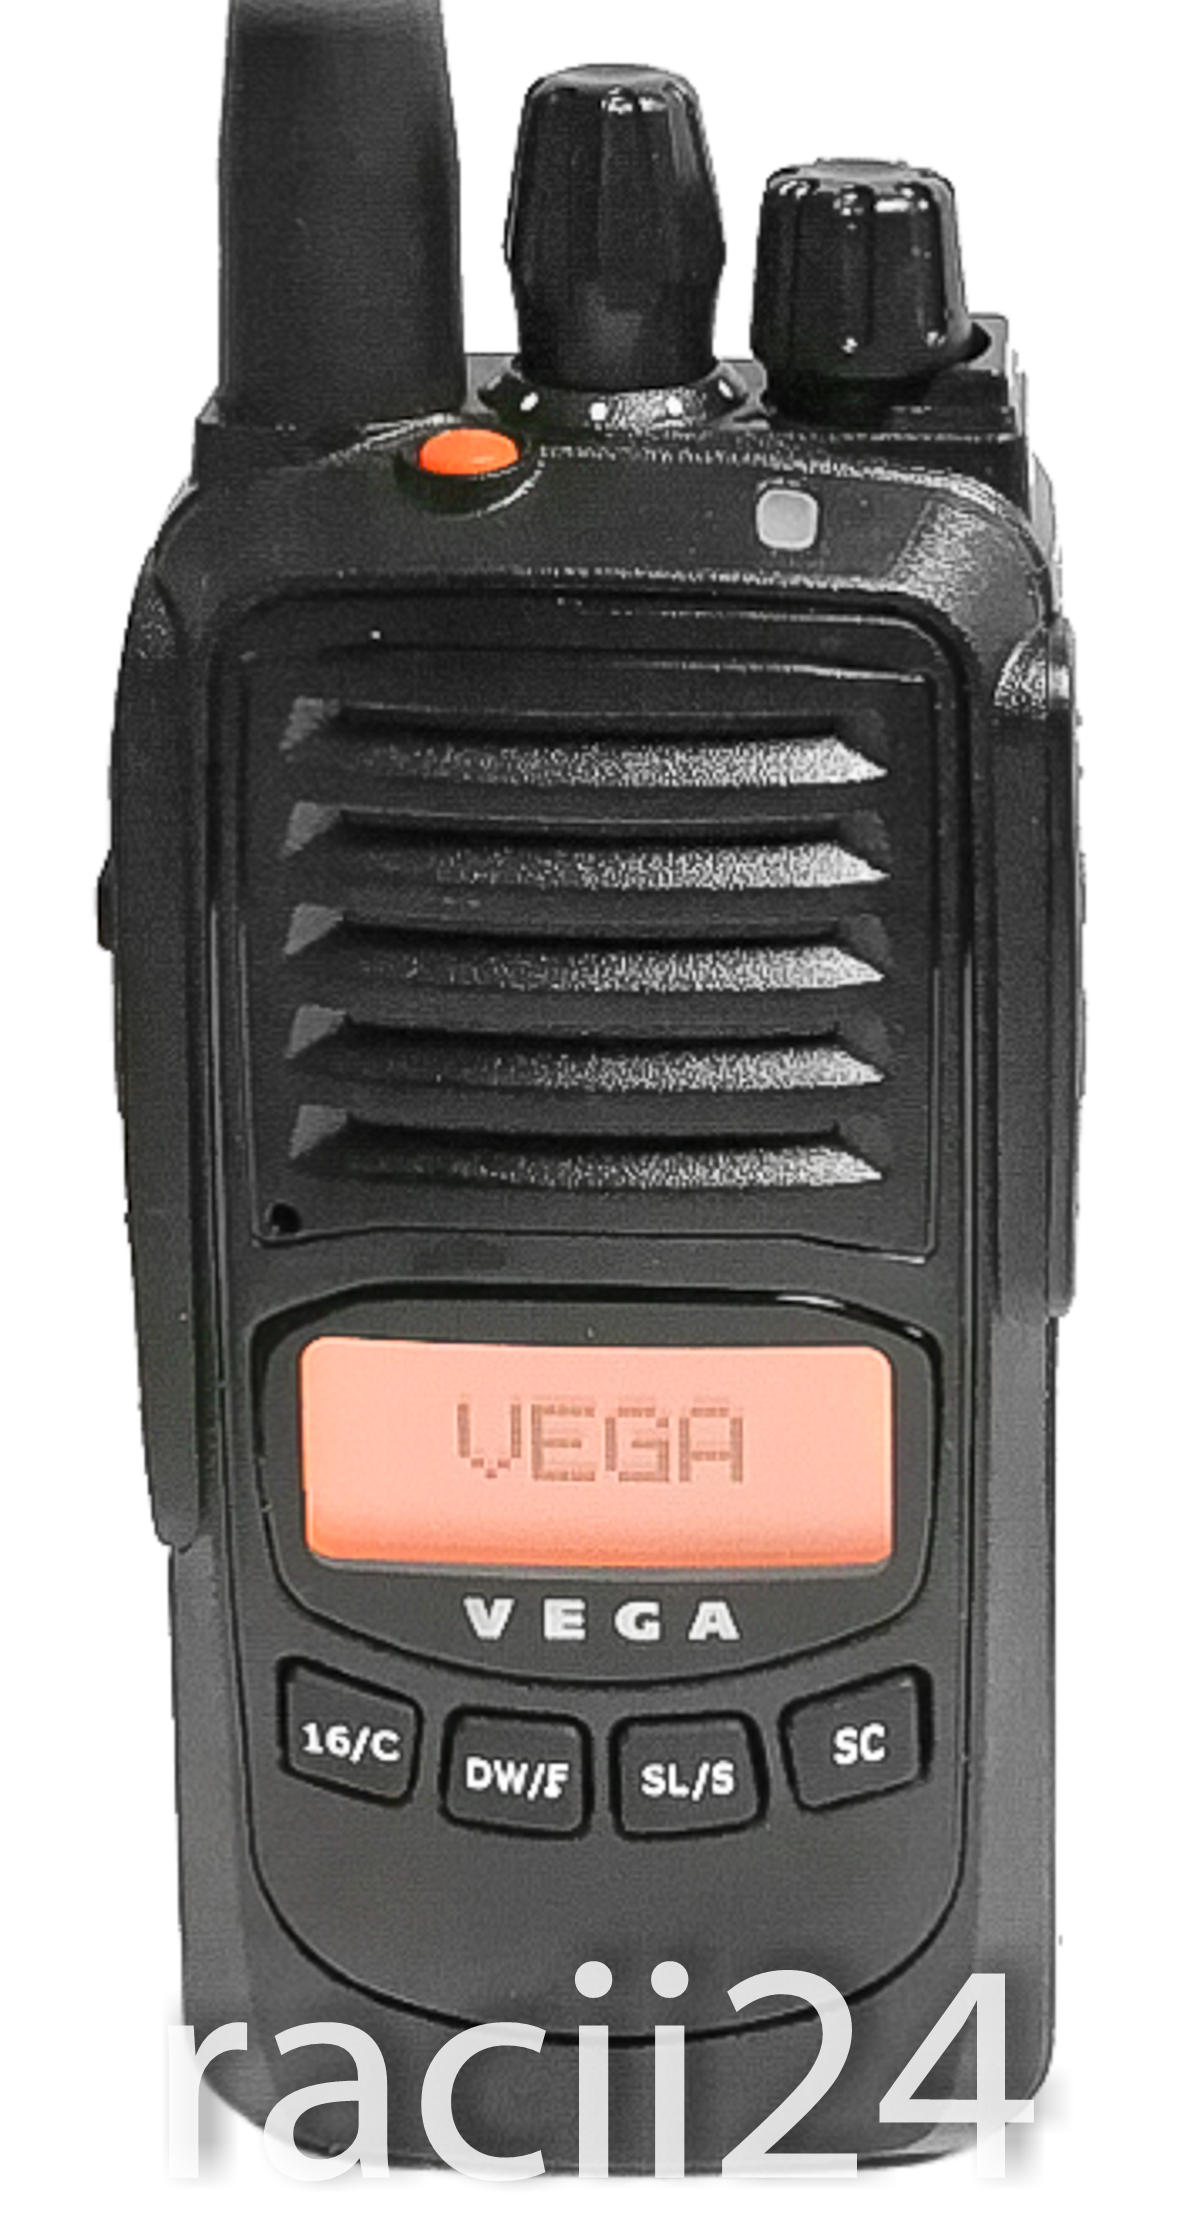 Речная радиостанция Vega VG-531 IP67 в магазине RACII24.RU, фото